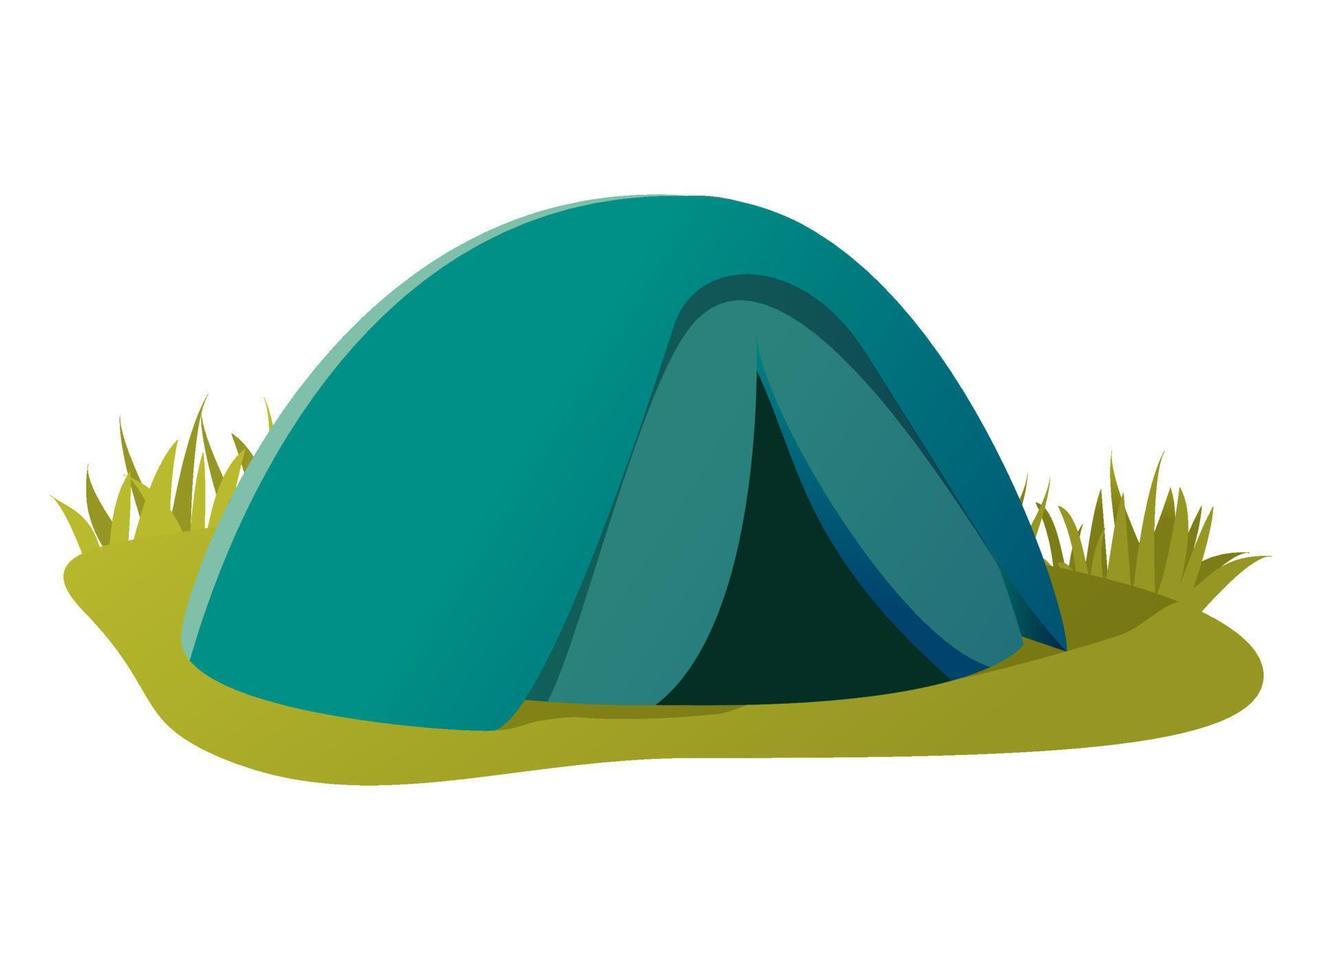 vandring camping tält.vektor platt illustration.isolated på vit bakgrund.grön gräs. vektor